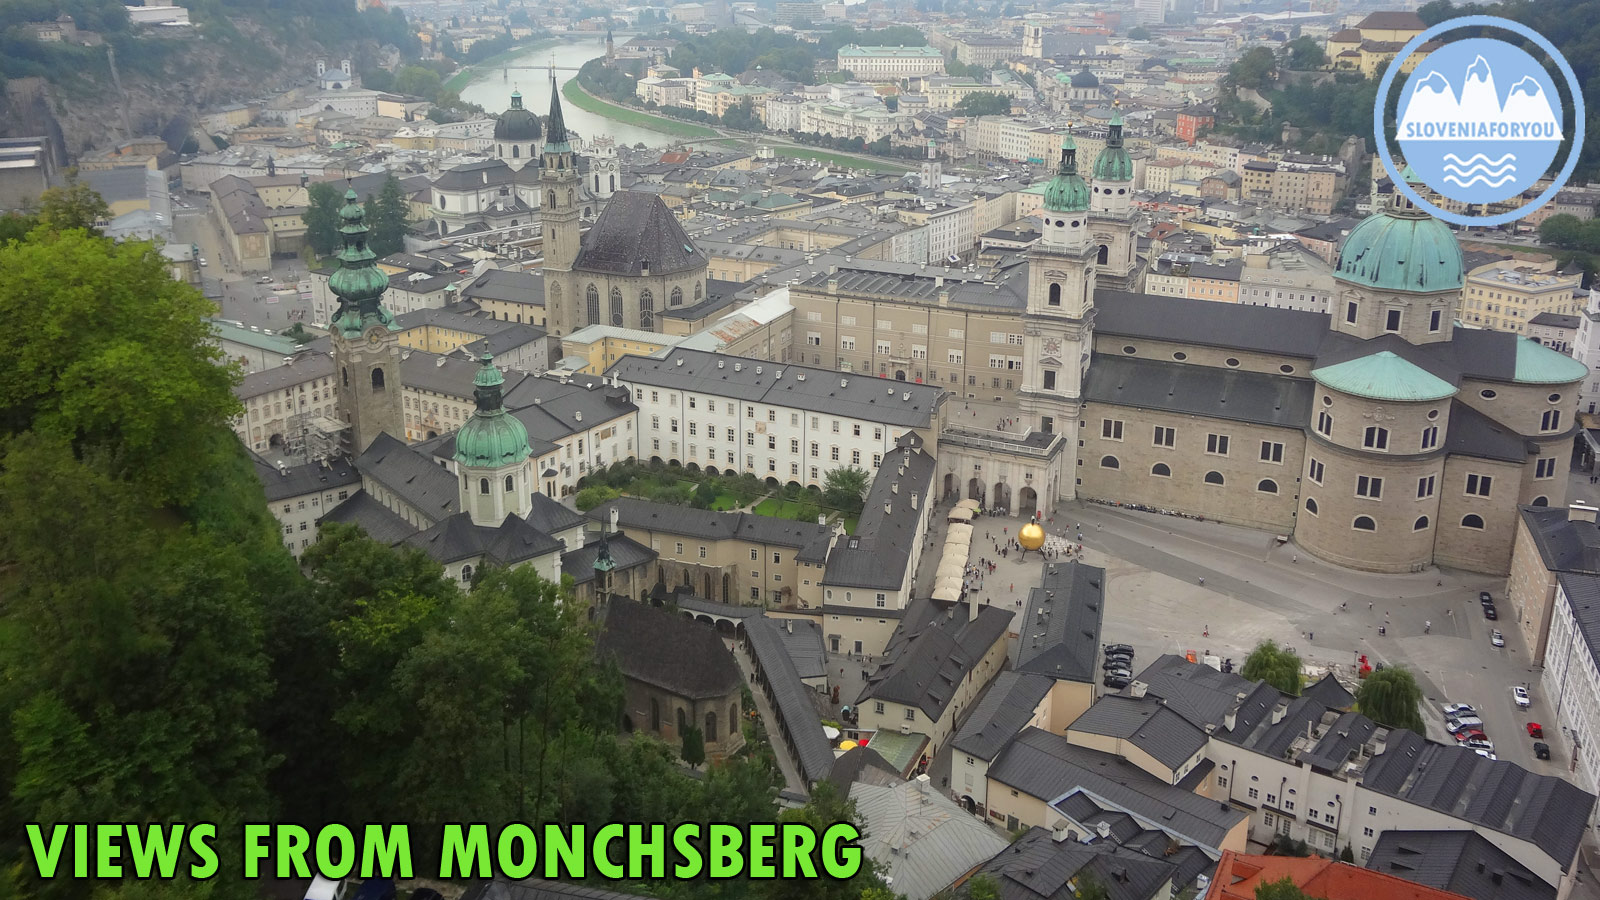 Monchsberg, Salzburg, Sloveniaforyou